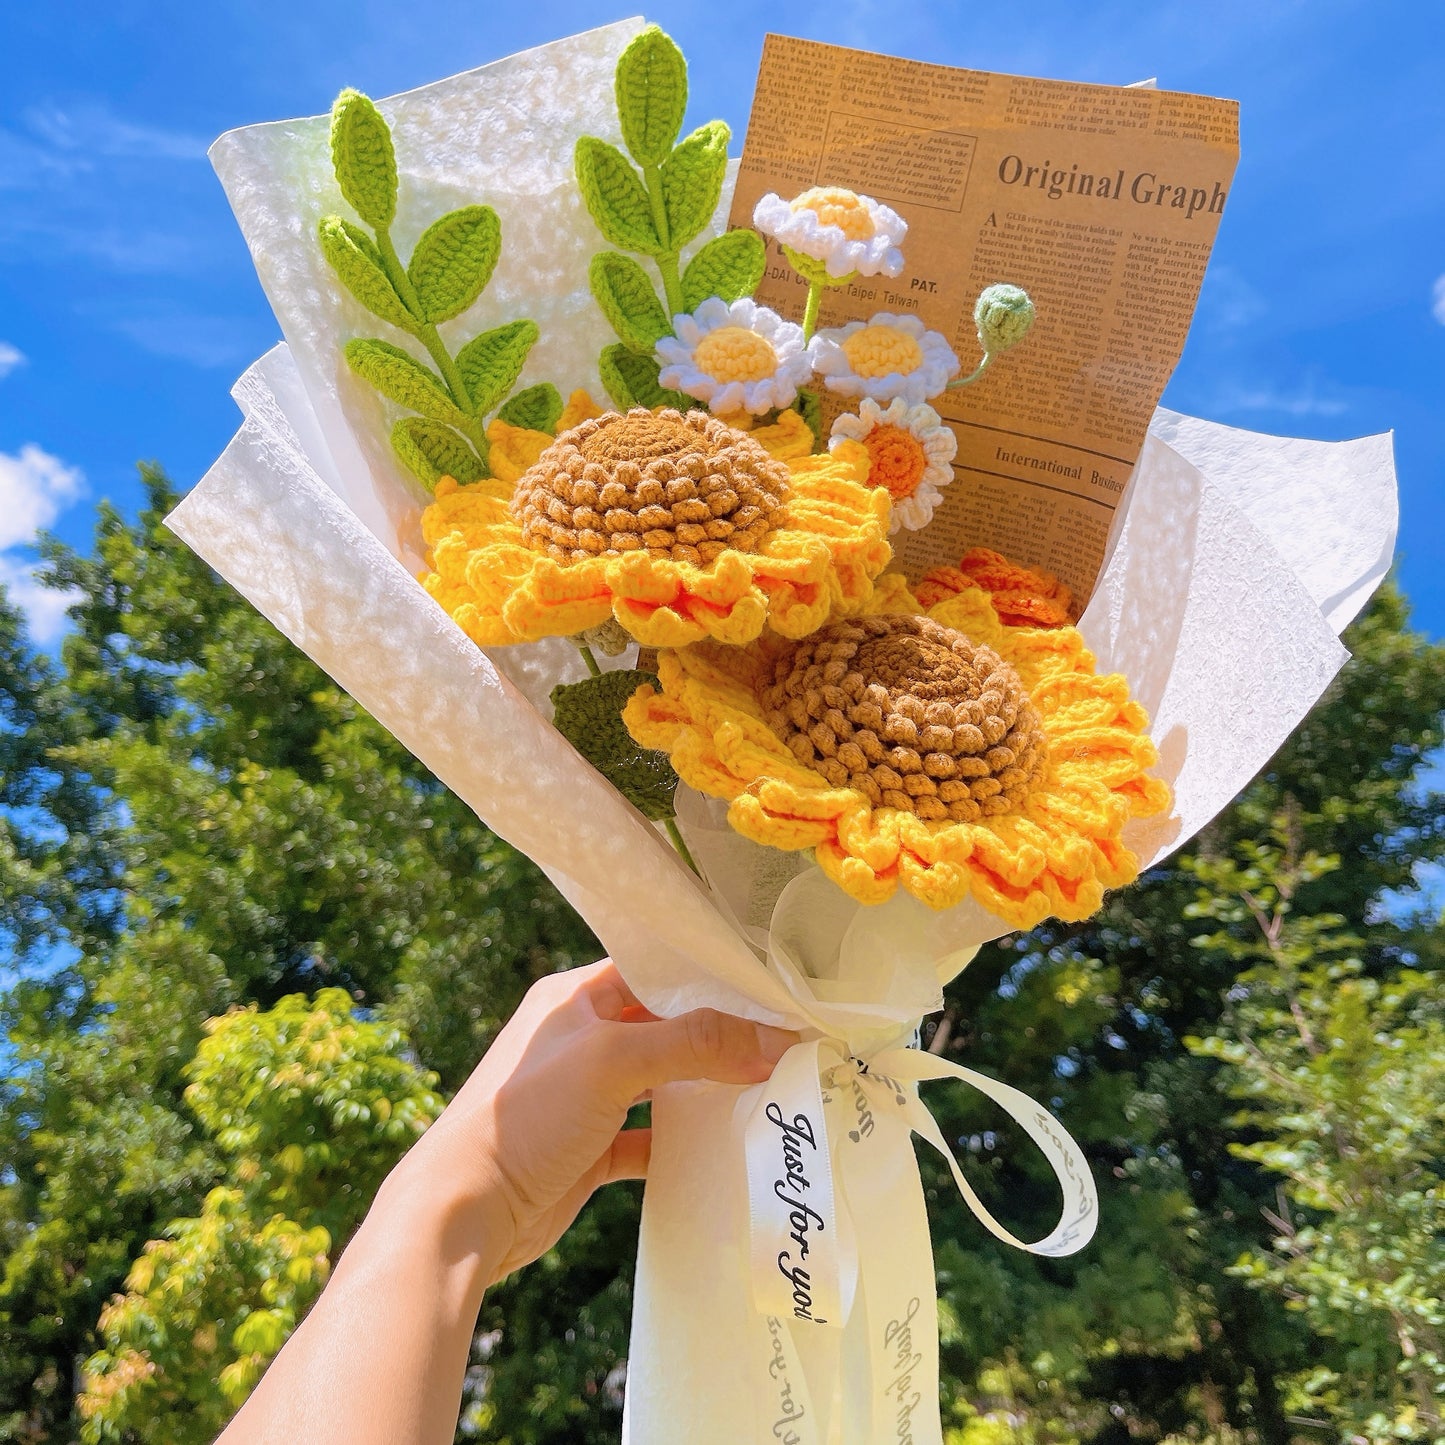 Bouquet de tournesols et de marguerites au crochet fait à la main dans un emballage en papier kraft avec un journal marron pour l'appréciation des vacances d'été